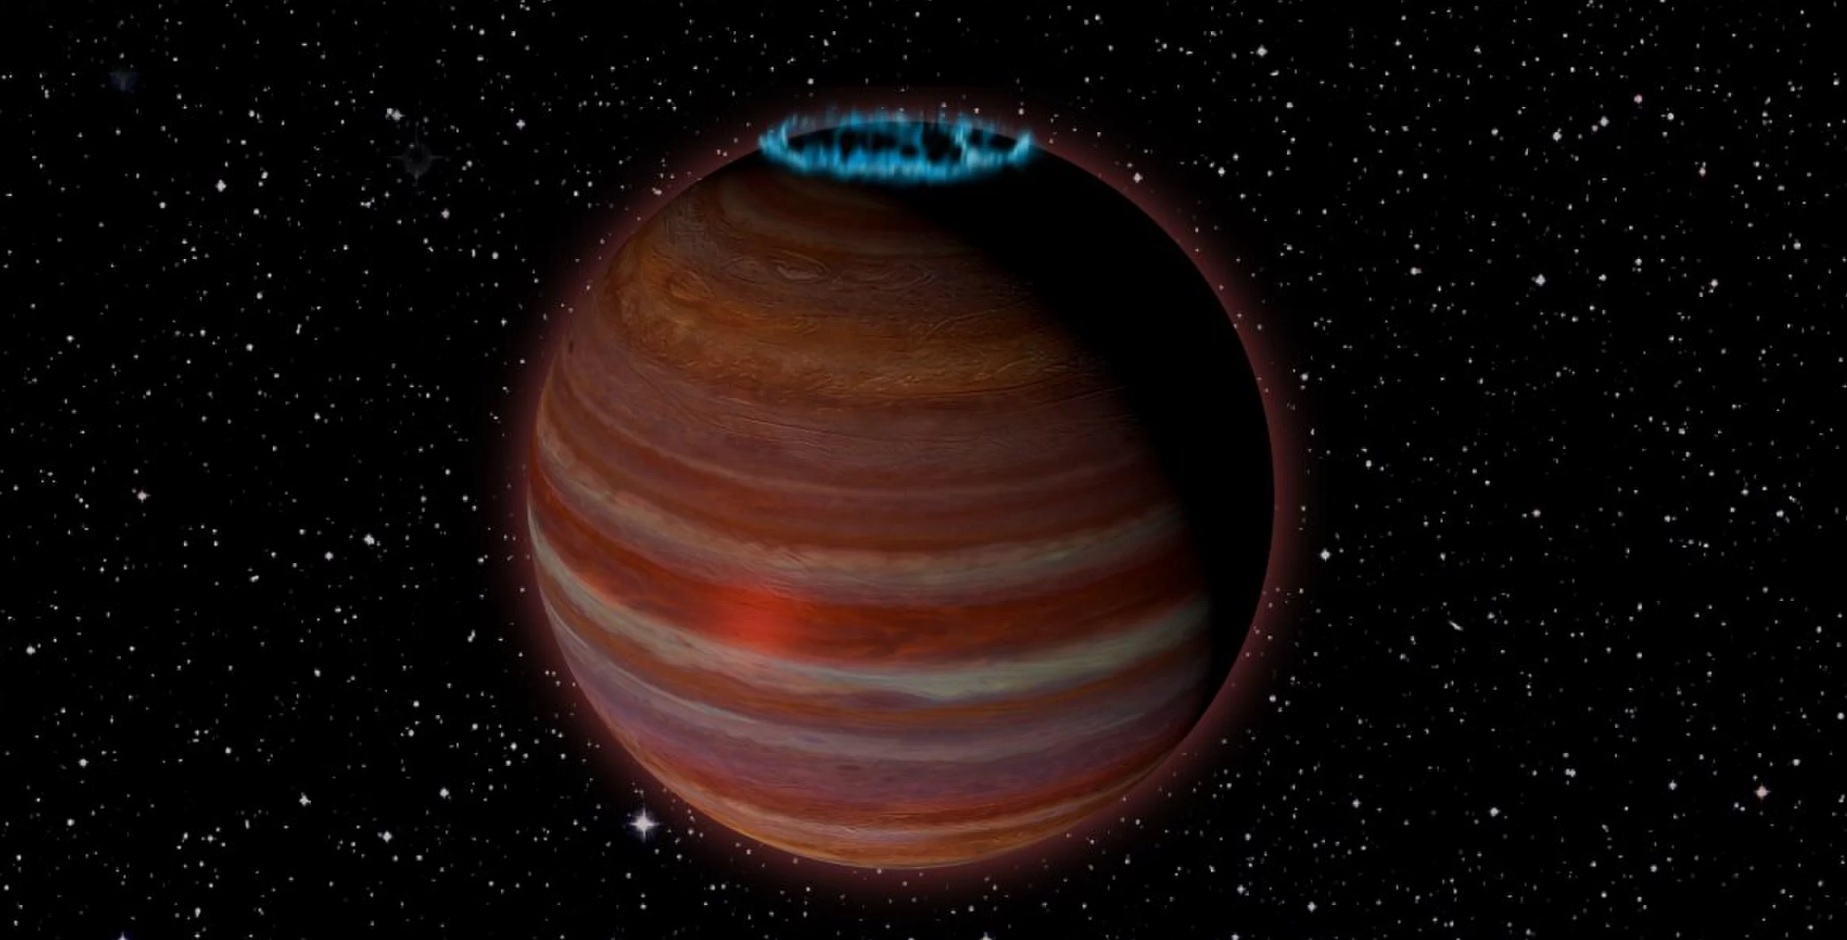 科学者は発見された巨大な迷惑星の強力な磁場